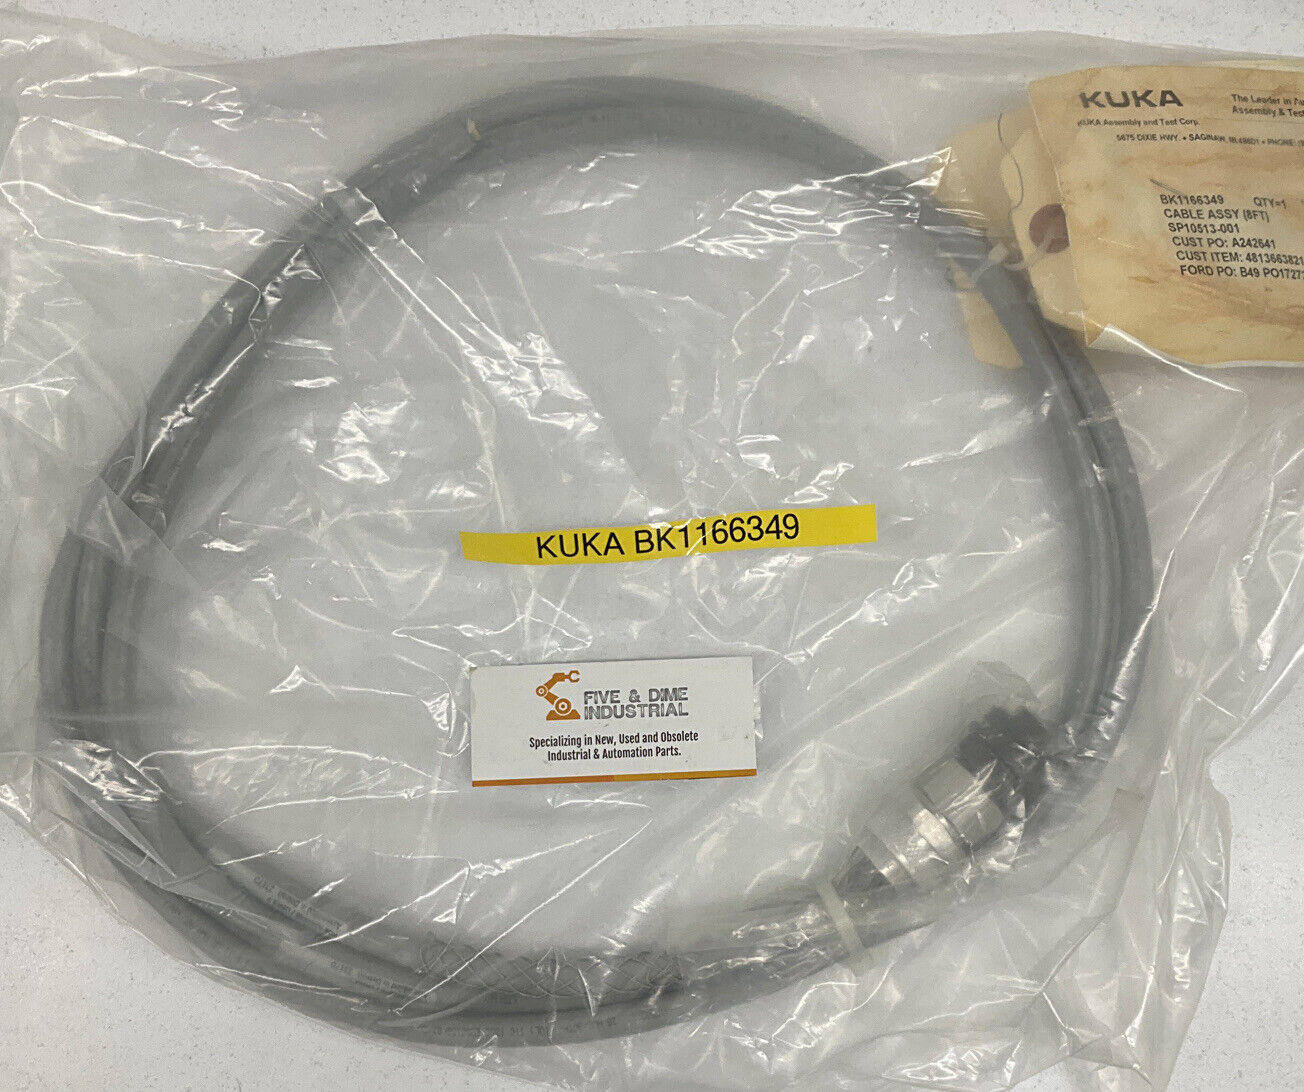 KUKA BK1166349 New Cable Assembly 8FT (CBL126)